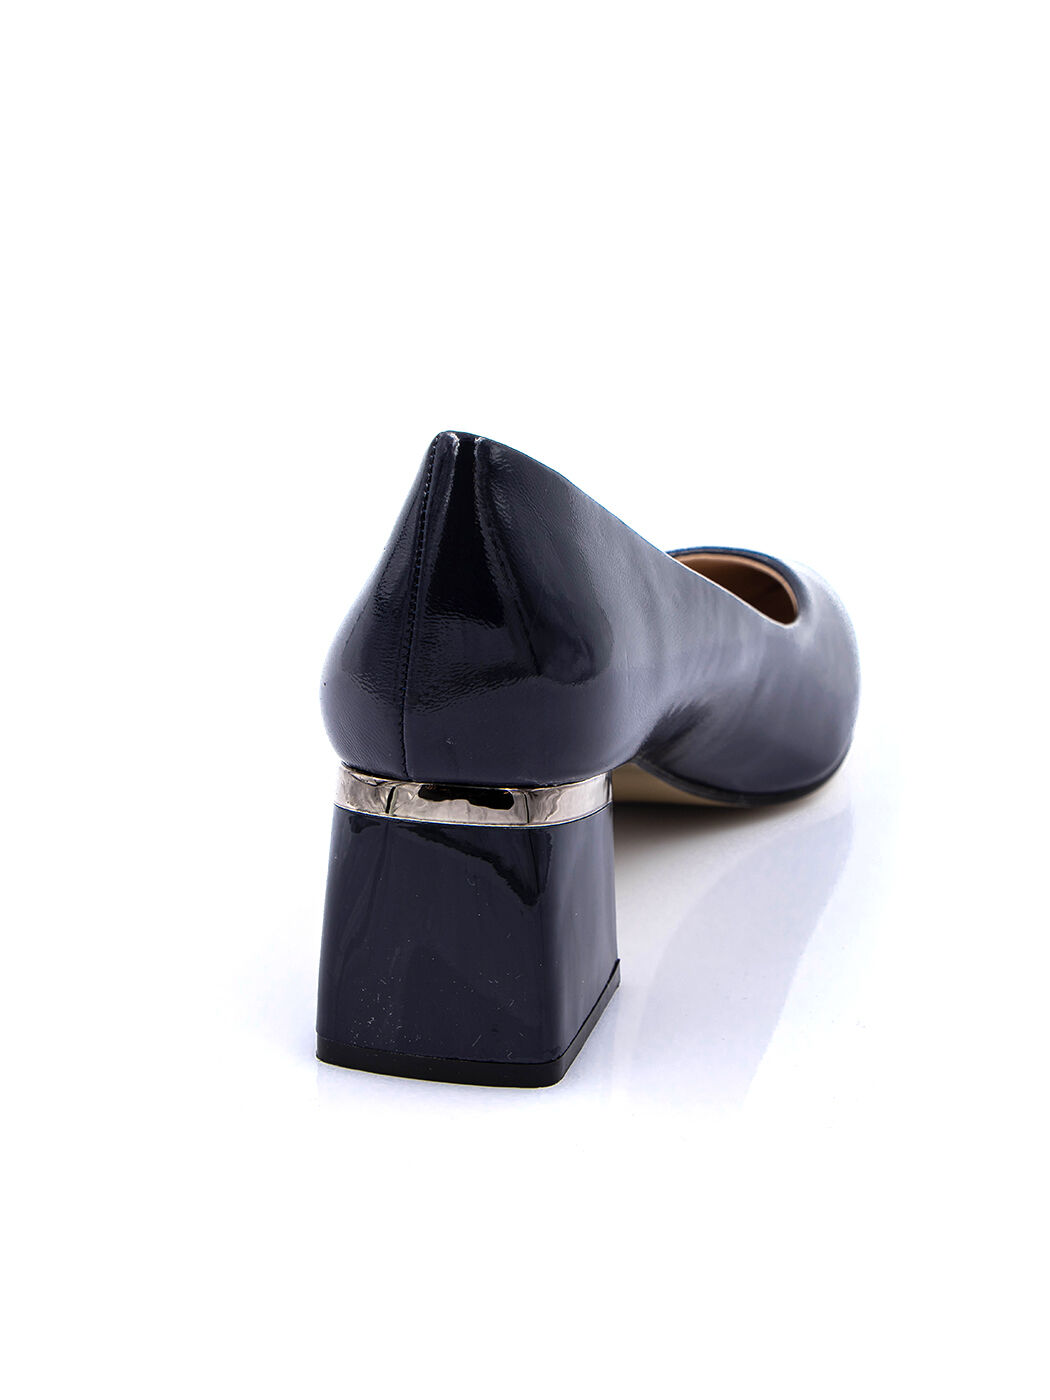 Туфли женские синие искусственный лак каблук устойчивый демисезон от производителя 3M вид 1